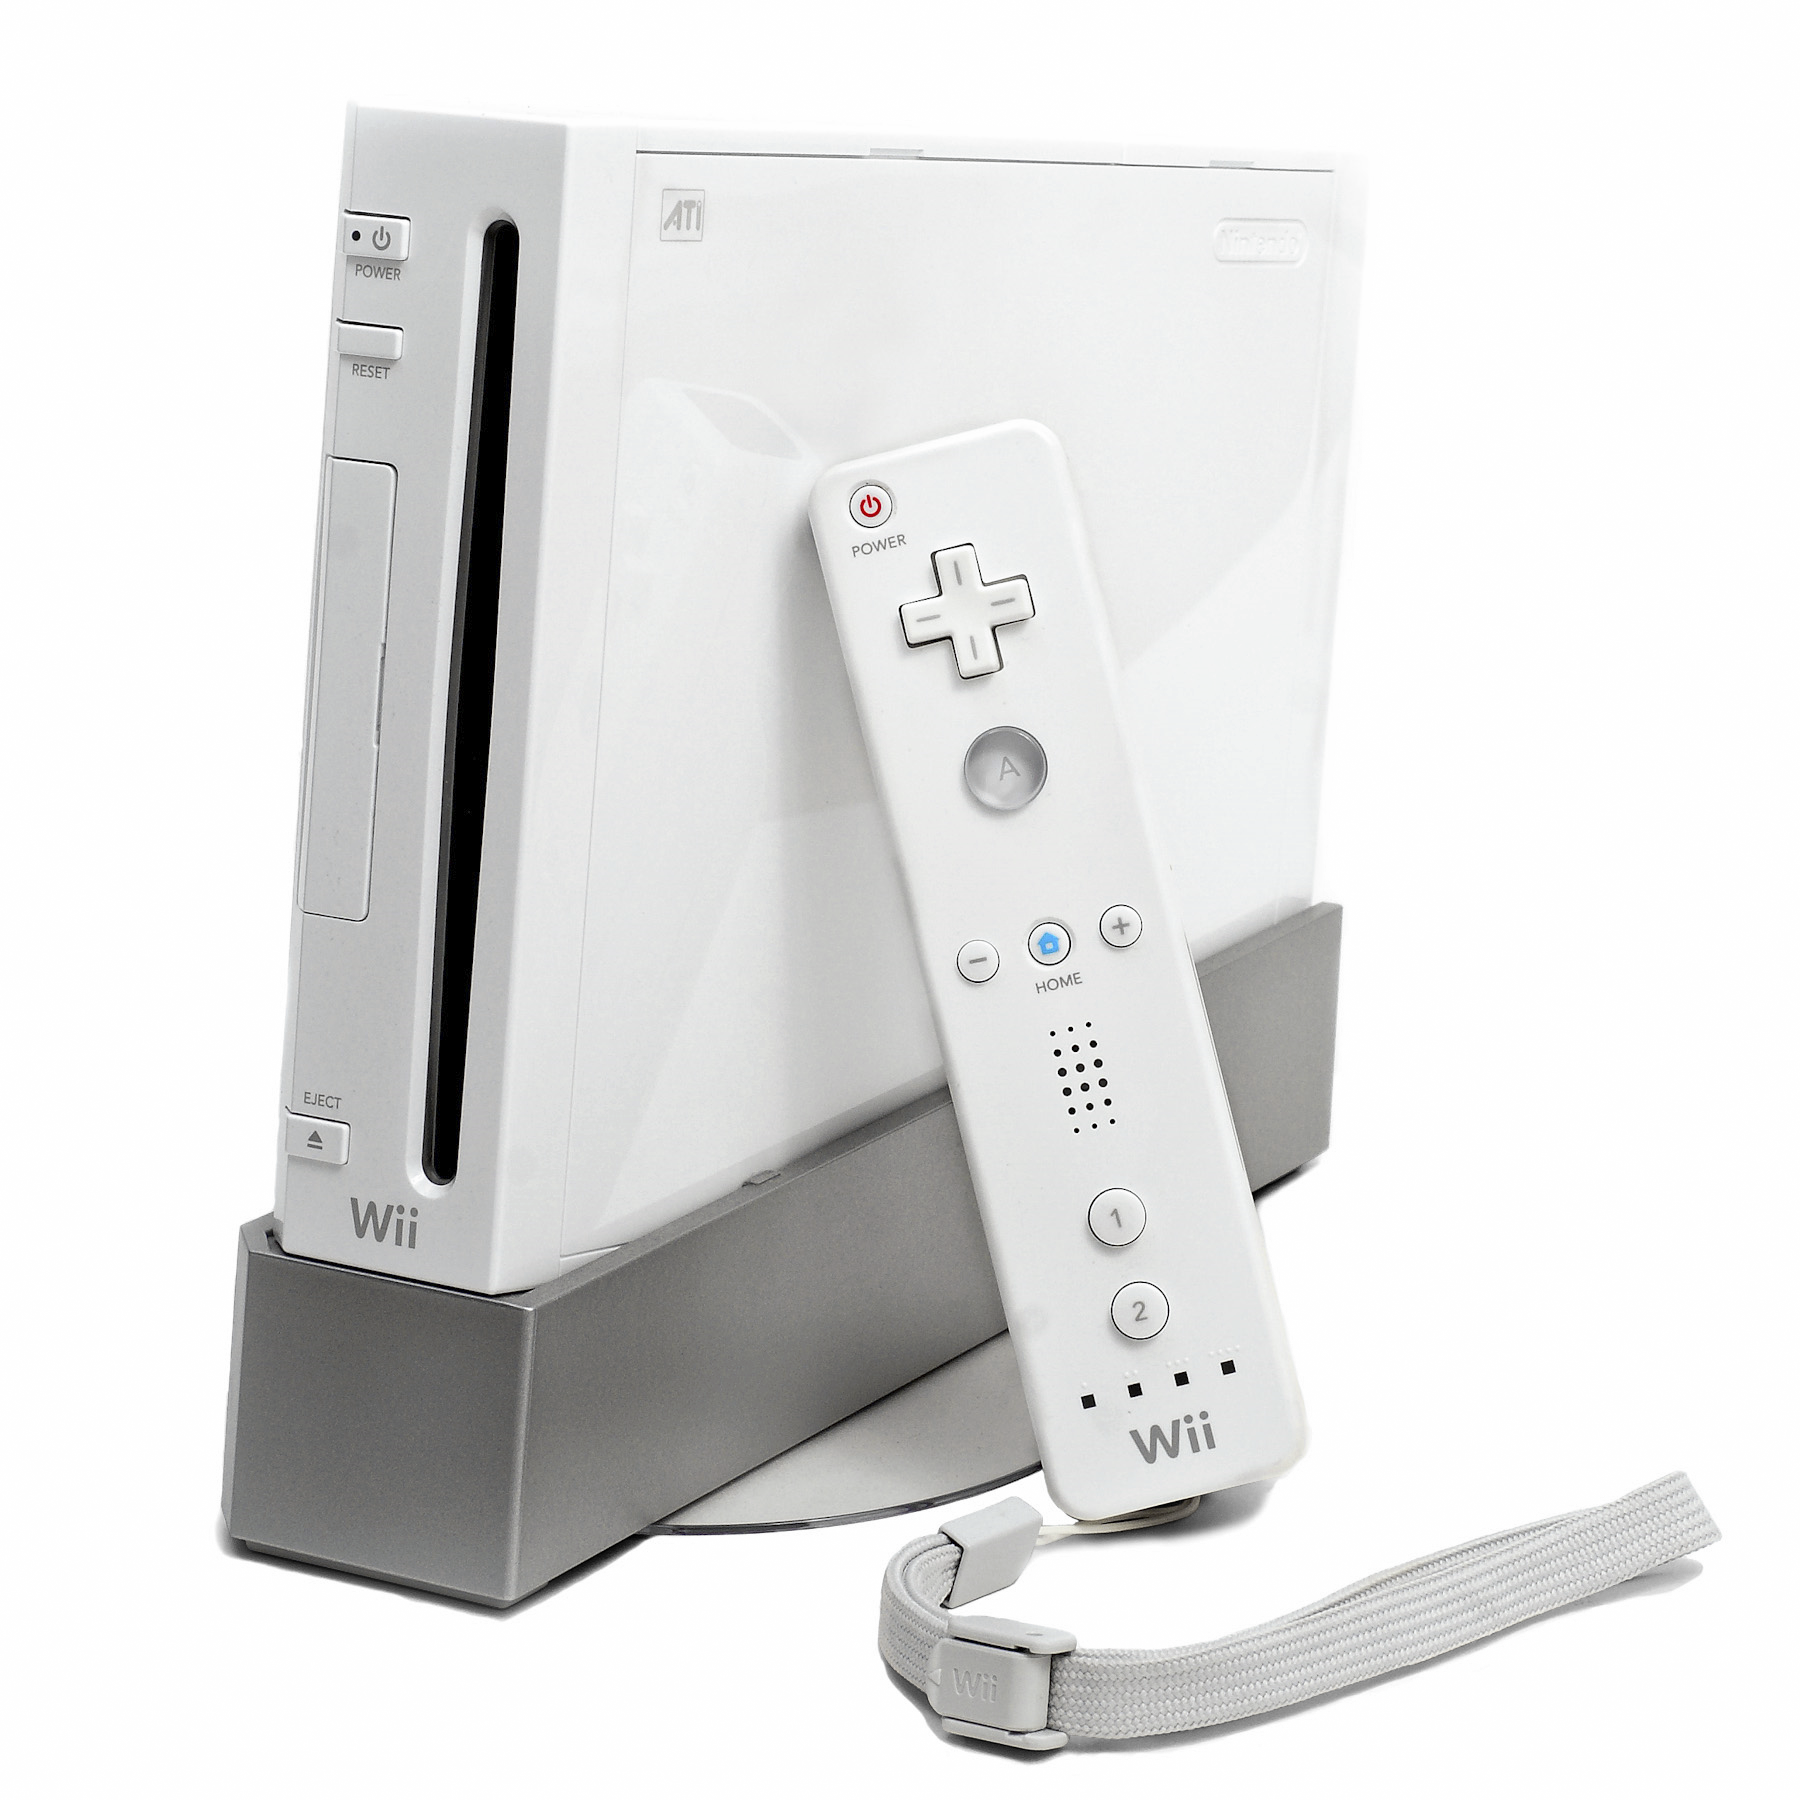 Nintendo Wii, mnohem populárnější než Wii Mini